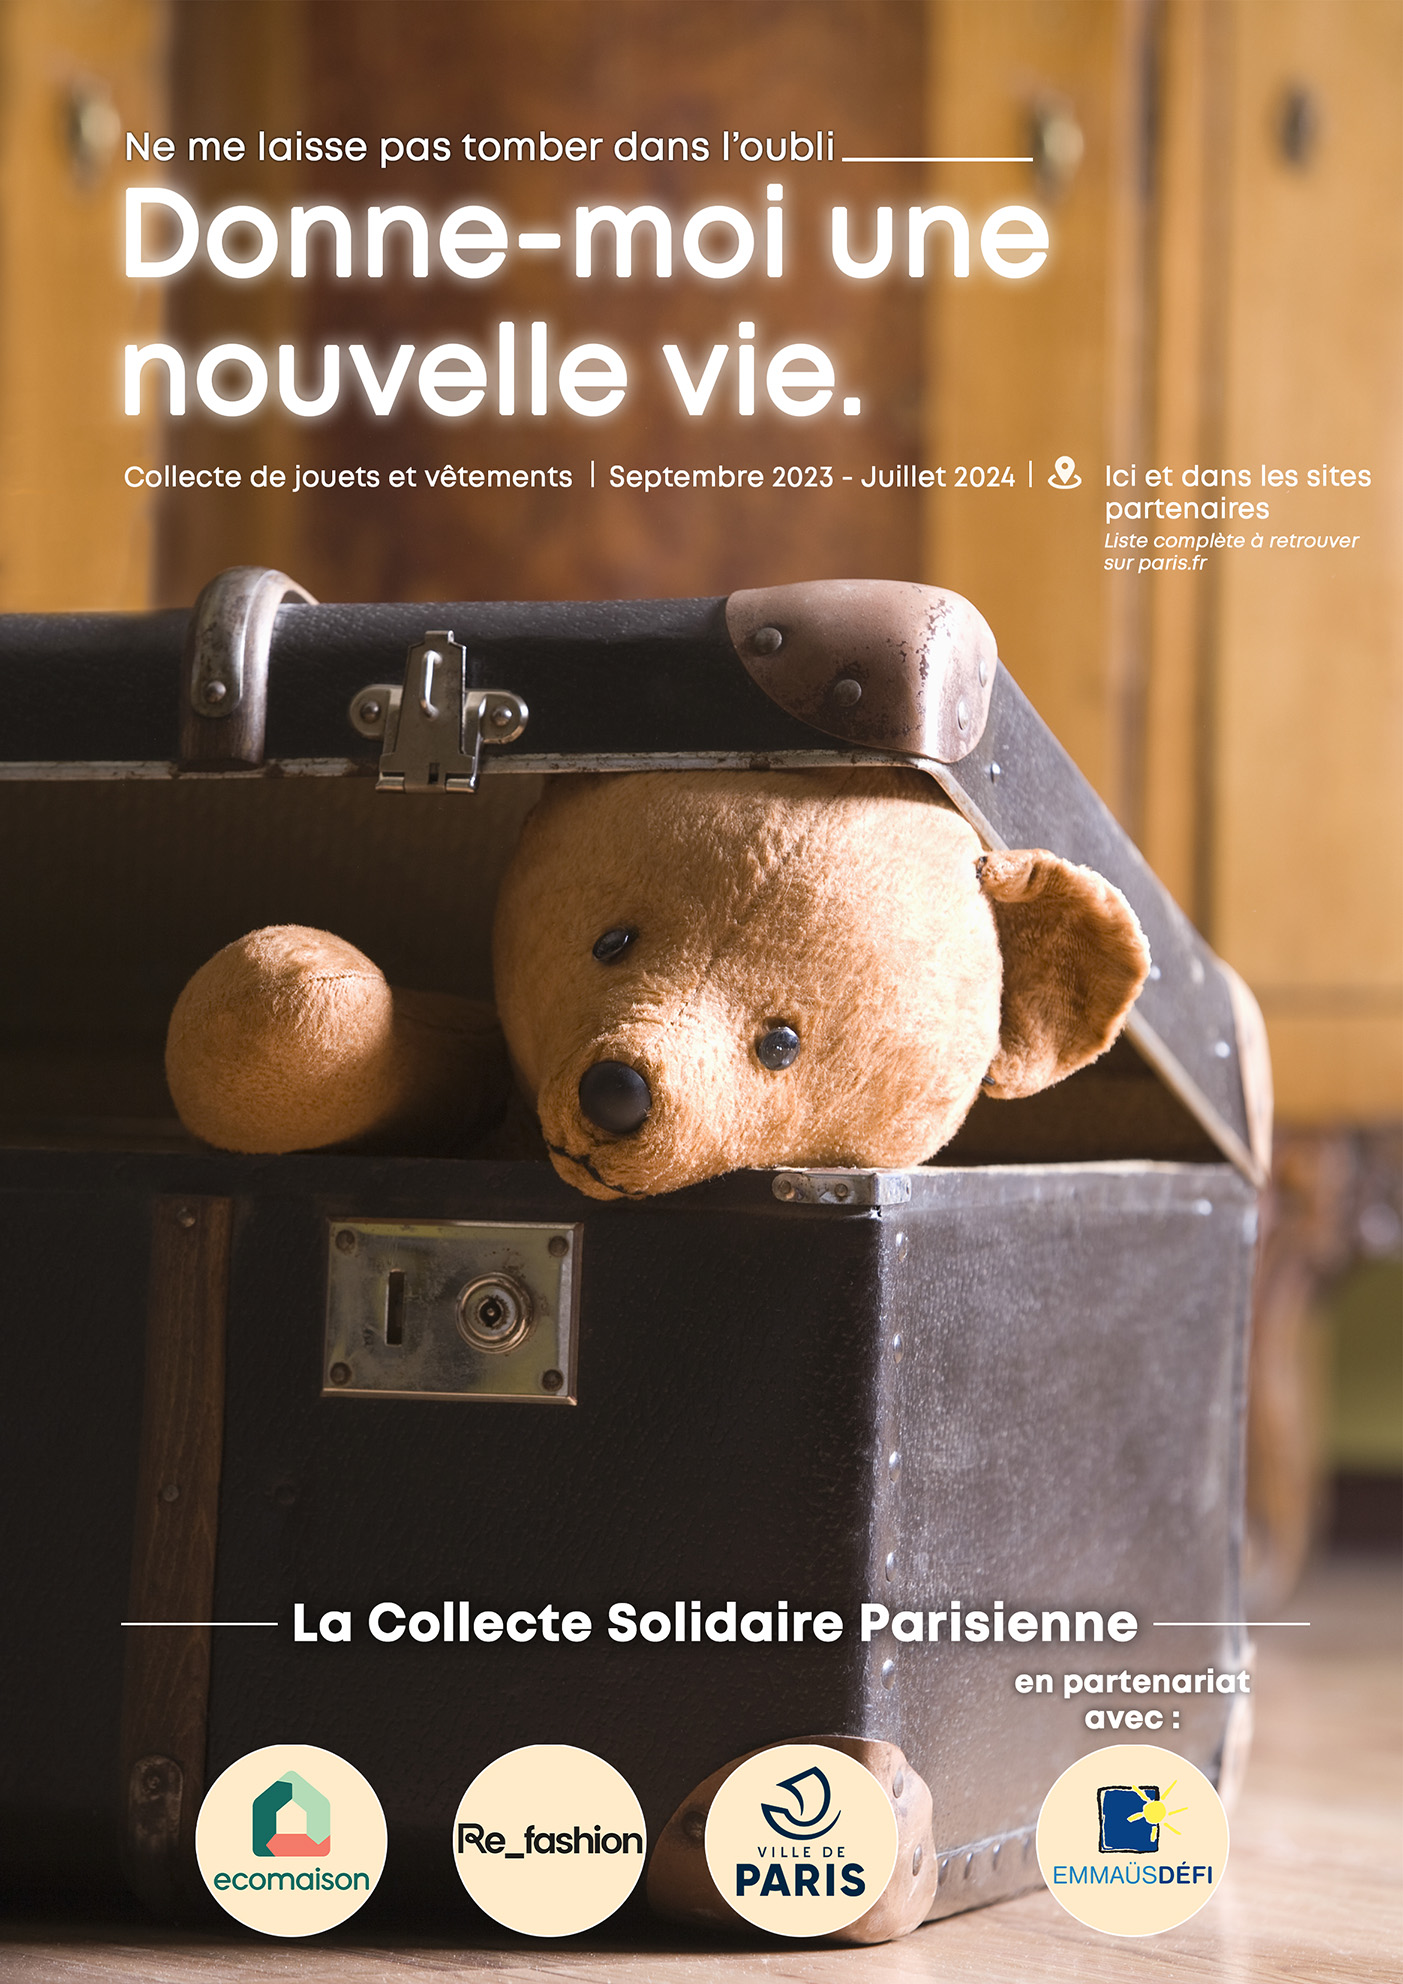 Collecte solidaire parisienne pour les jouets, vêtements, linge de maison et chaussures usagés